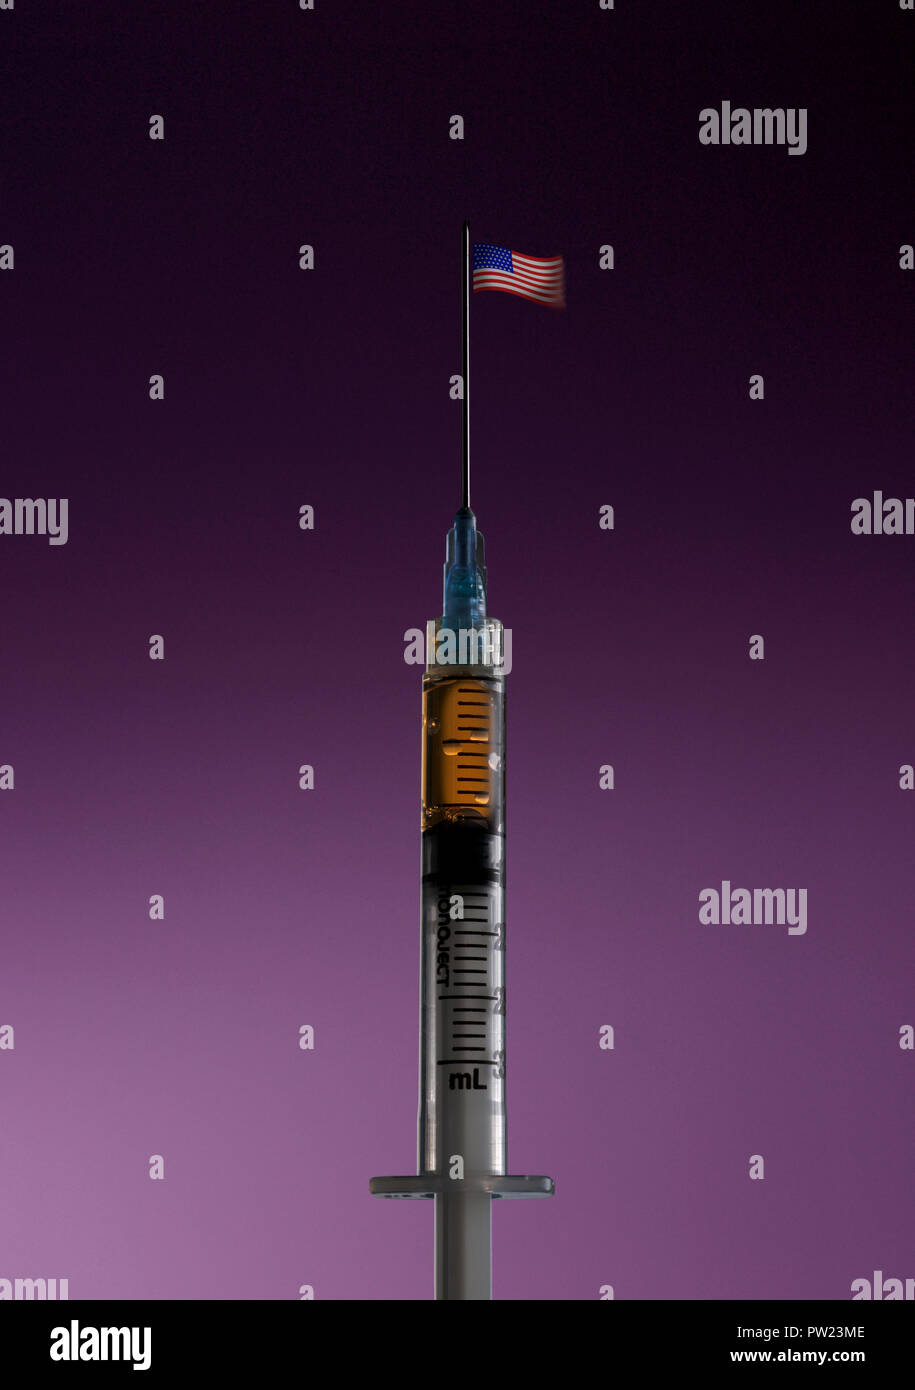 Konzept eine Spritze mit einer Nadel stehen wie ein hohes Gebäude mit USA-Flagge auf der Oberseite, Opioide, Krise, Amerikanische sucht, Drogenmissbrauch, Opioide Epide Stockfoto